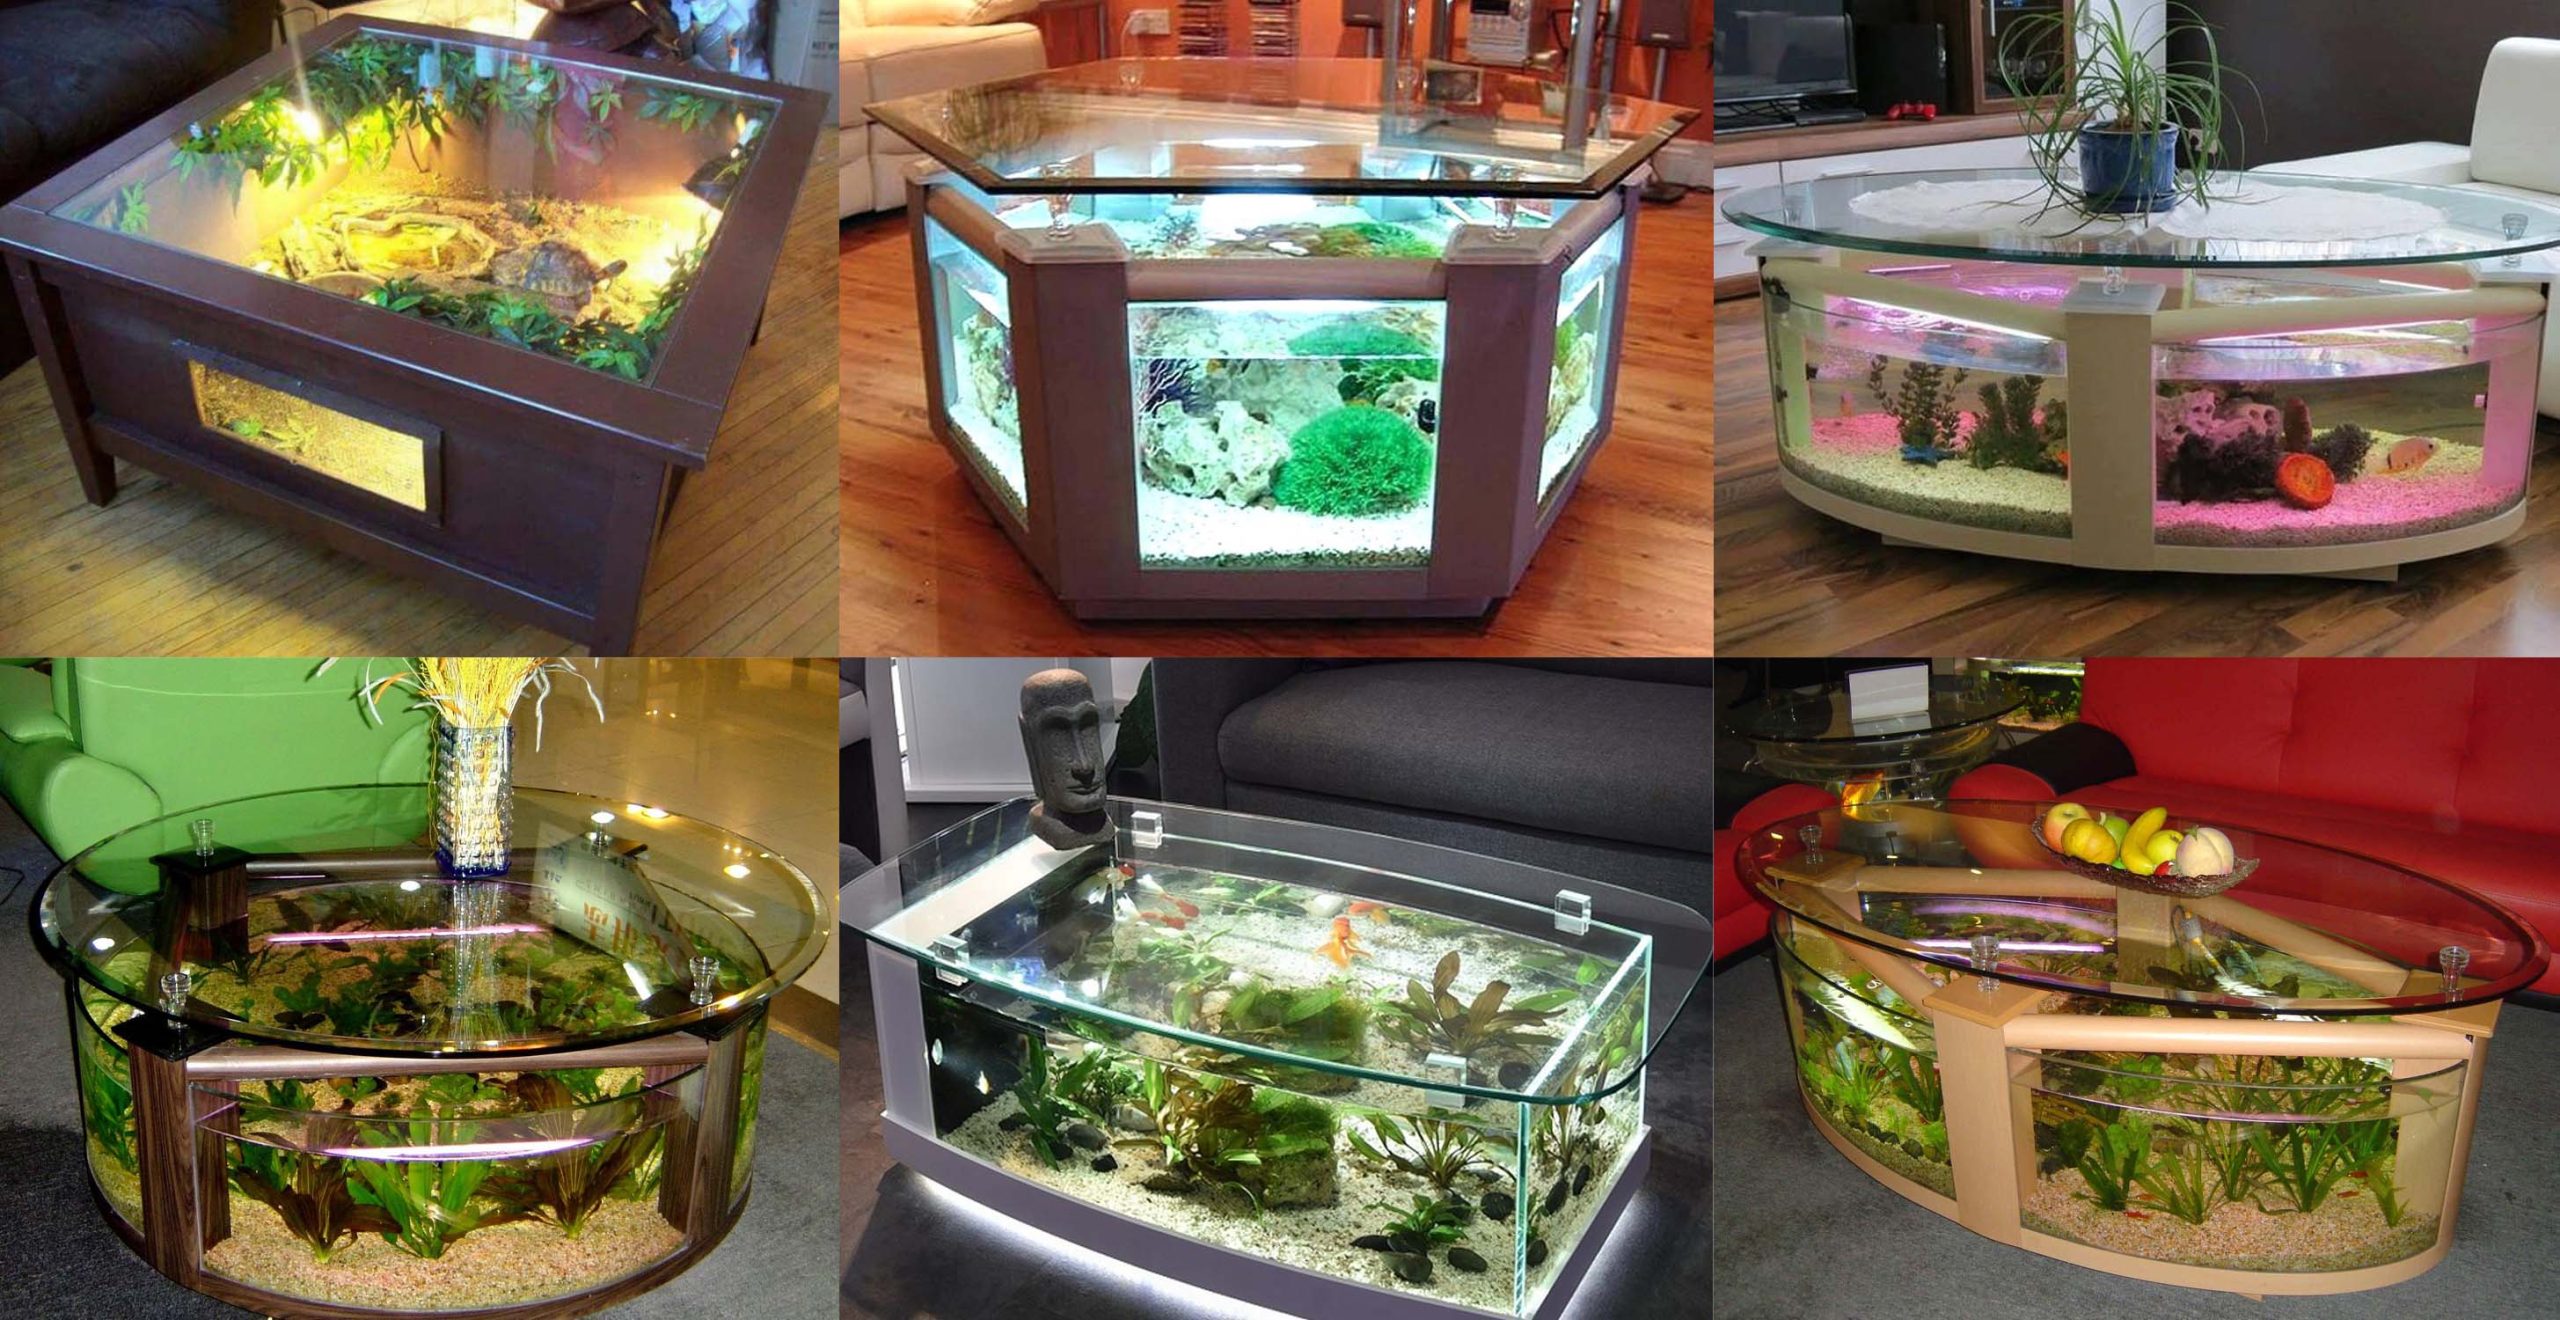 Top 40 Amazing Aquarium Coffee Table Design Ideas